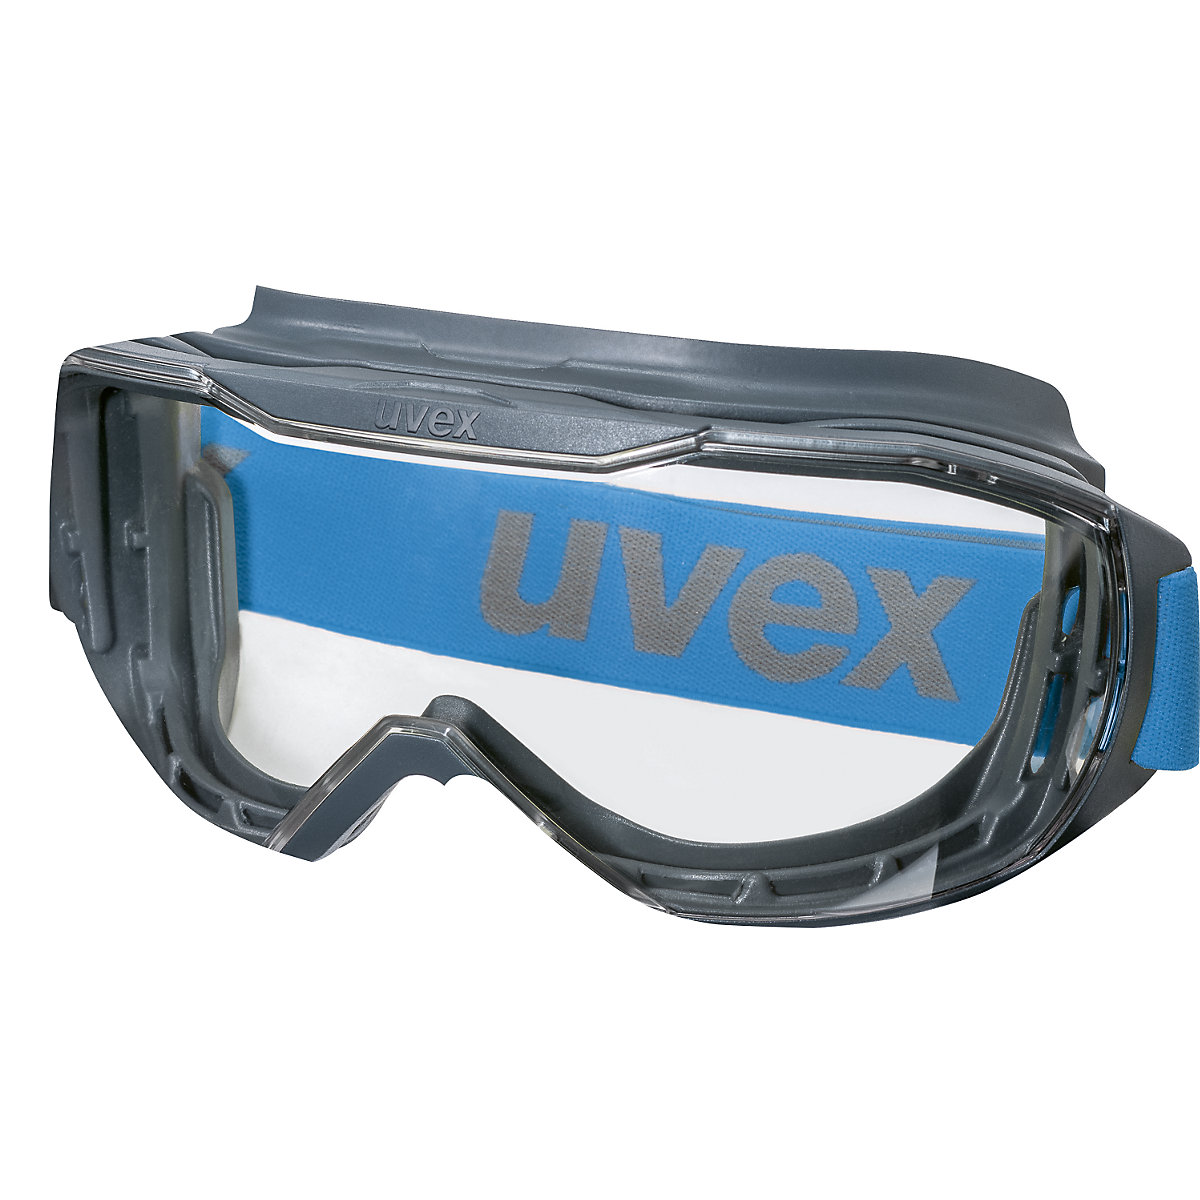 megasonic teljes látóterű védőszemüveg - Uvex